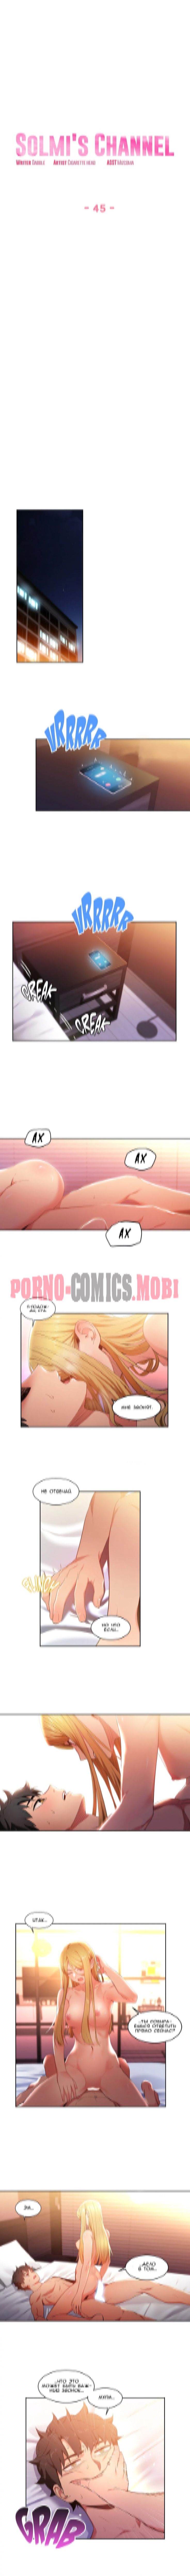 Порно Комикс Канал Солми Части 45-47 смотреть бесплатно онлайн